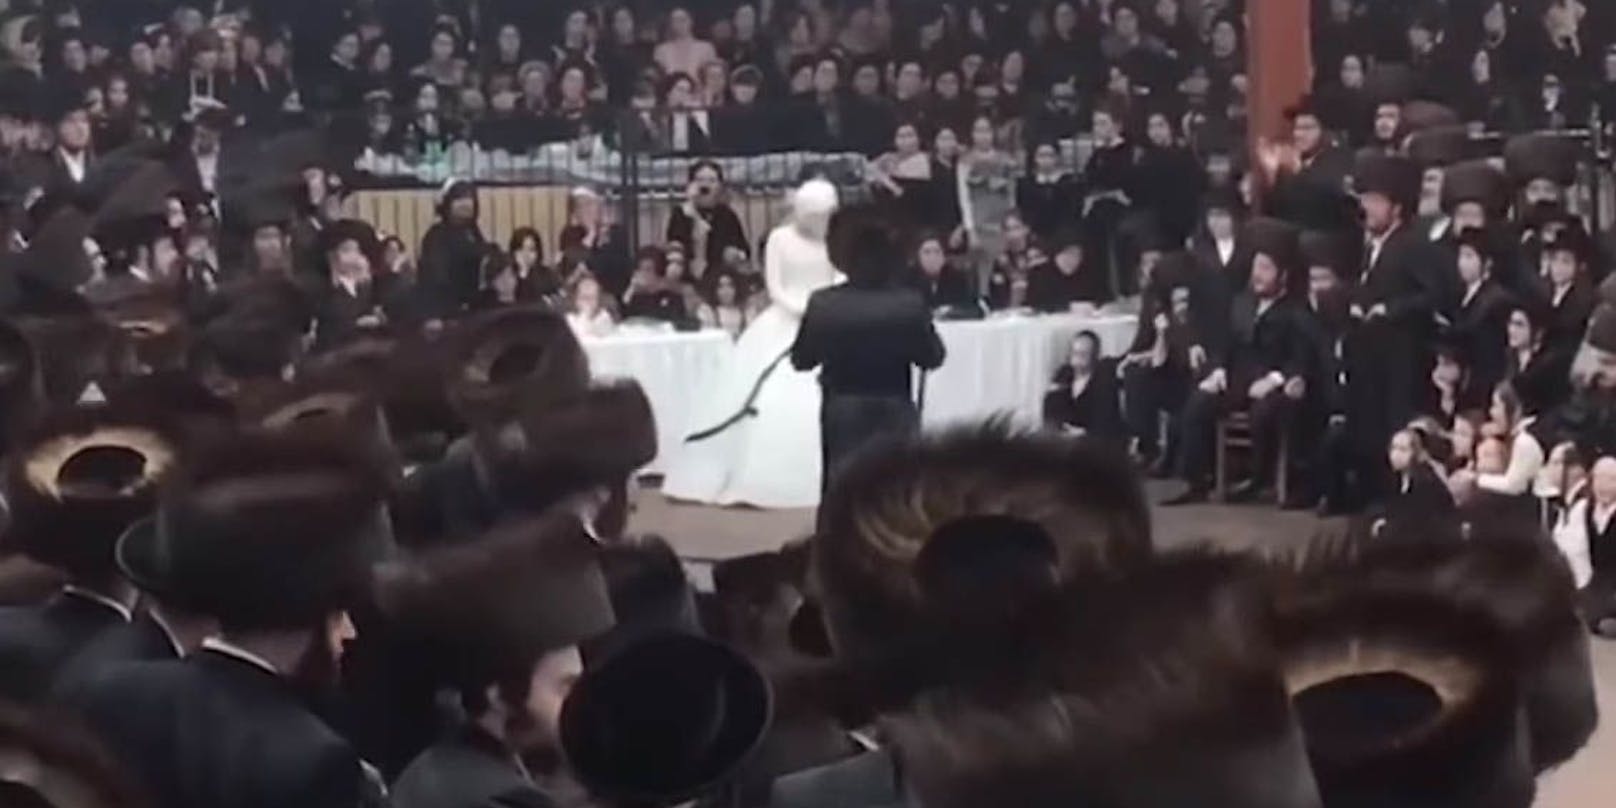 Das Video der Hochzeit in der Synagoge macht in den sozialen Medien die Runde.